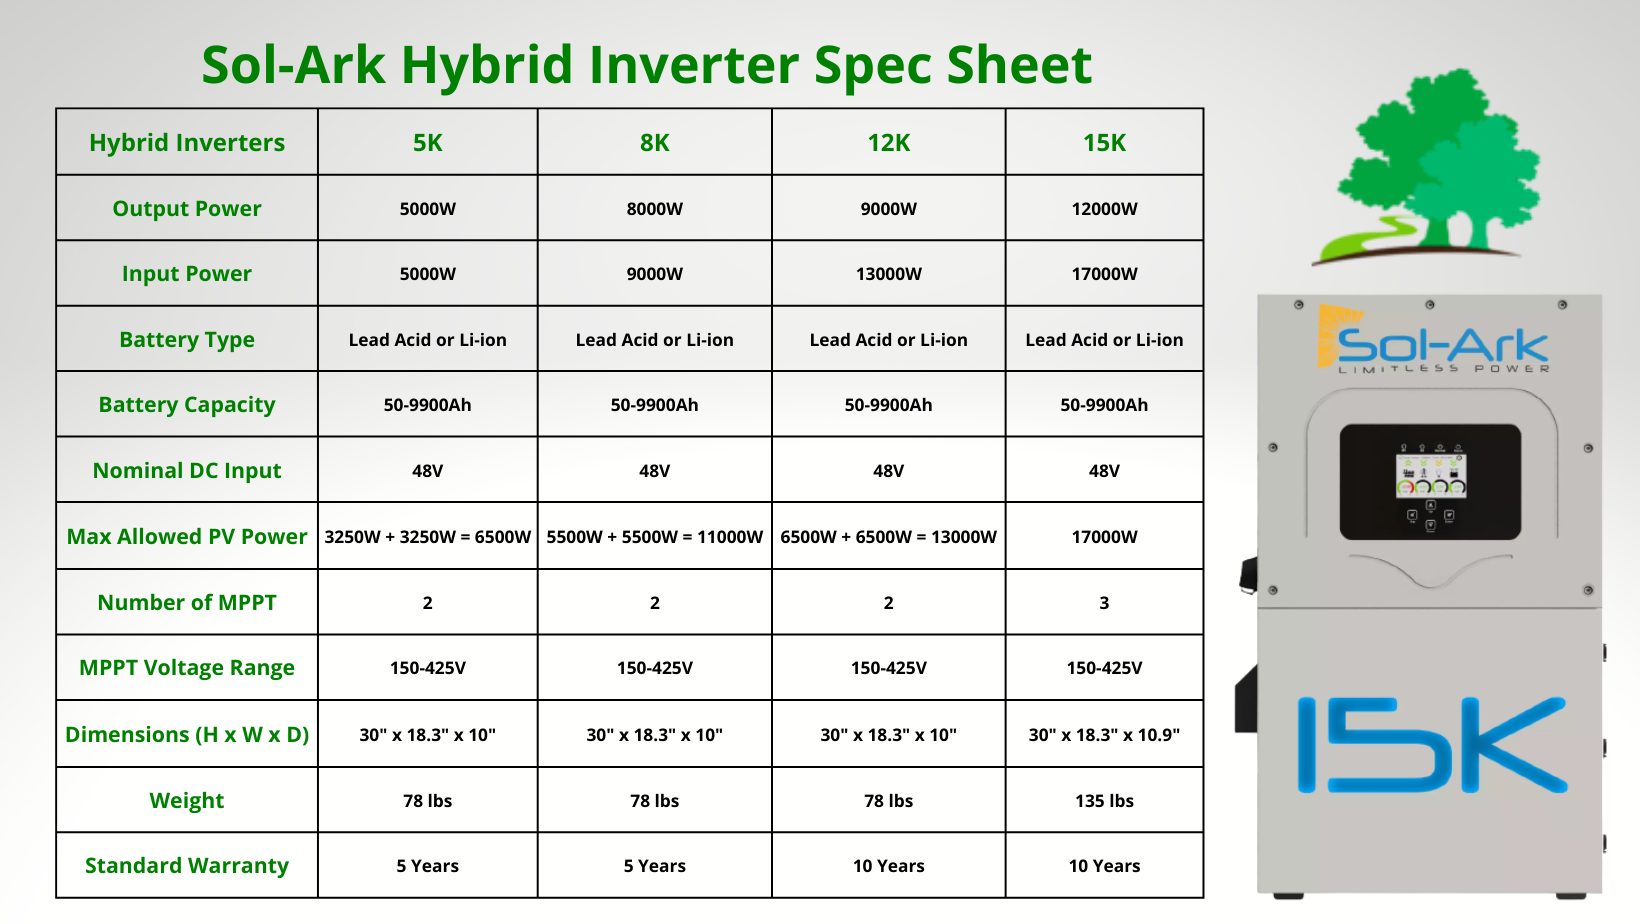 Sol-Ark Hybrid Inverter Spec Sheet